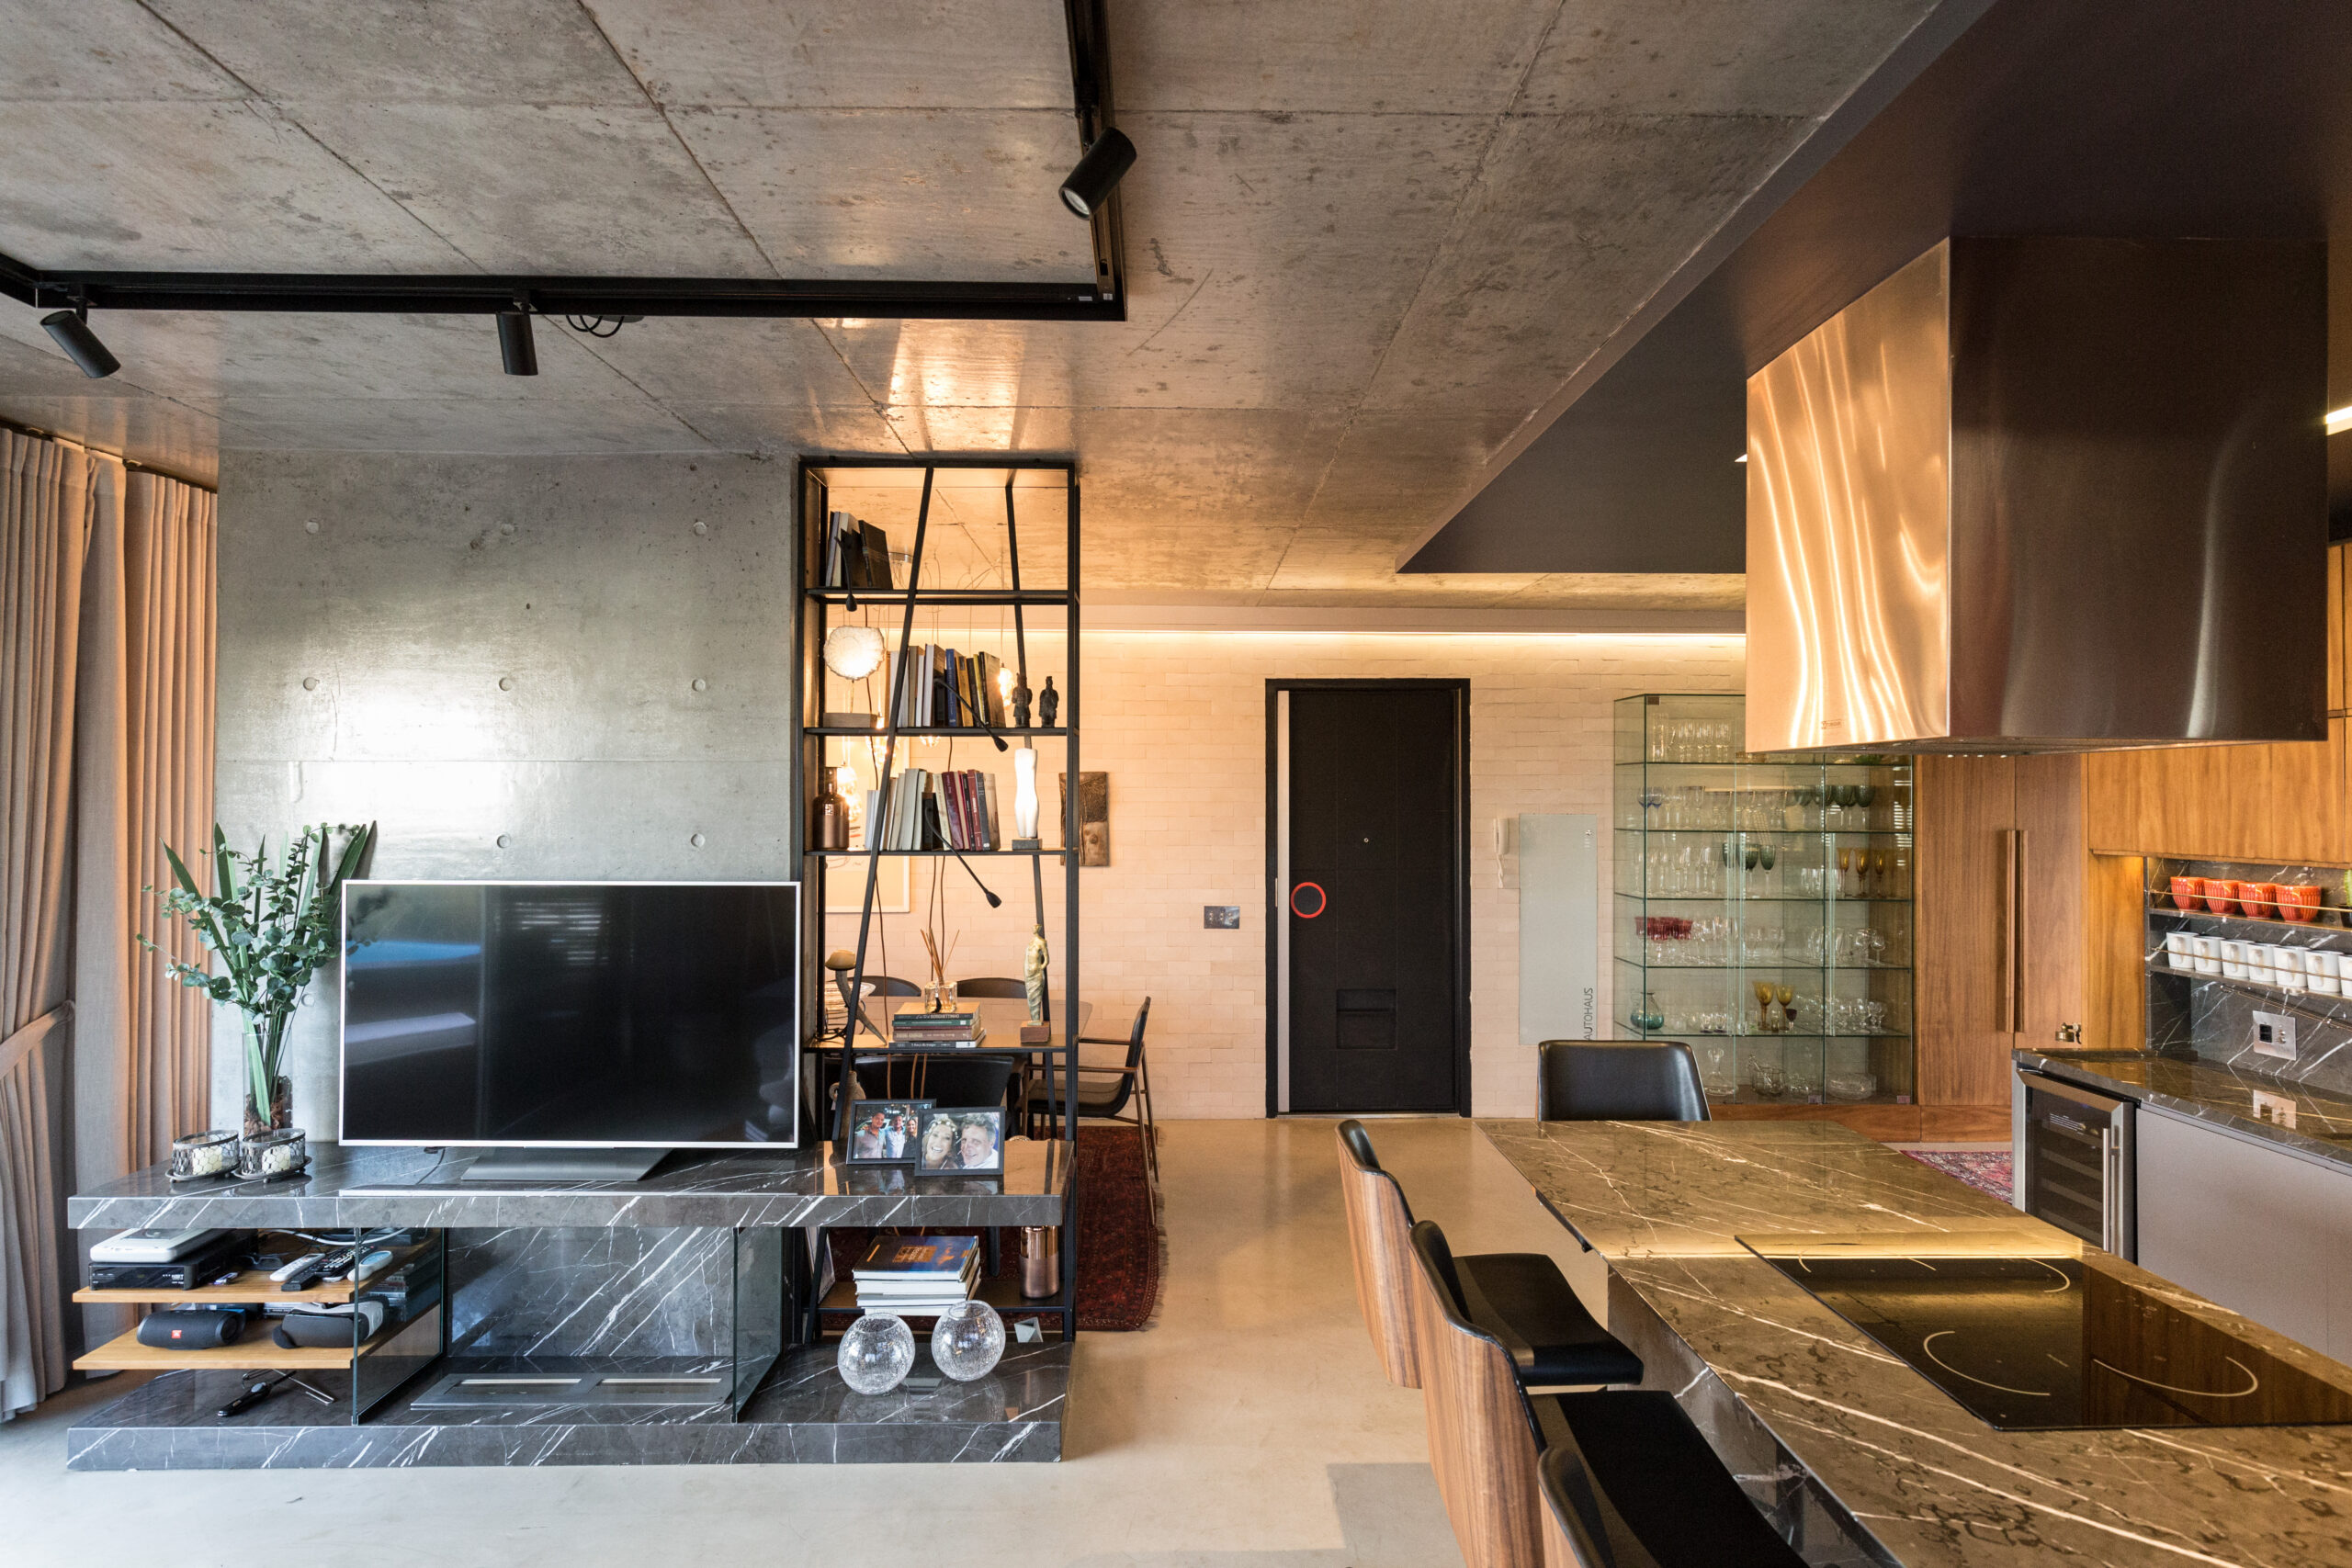 Cozinha e sala do apartamento maxhaus integrada